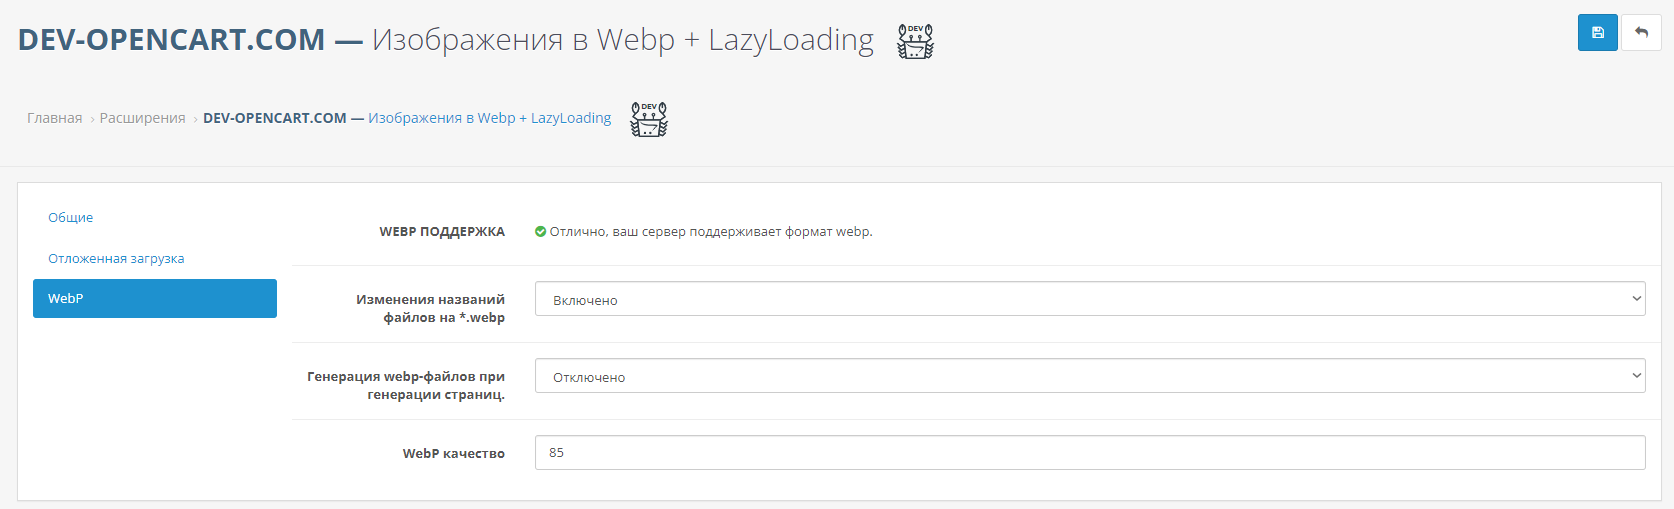 Изображения в Webp + LazyLoading